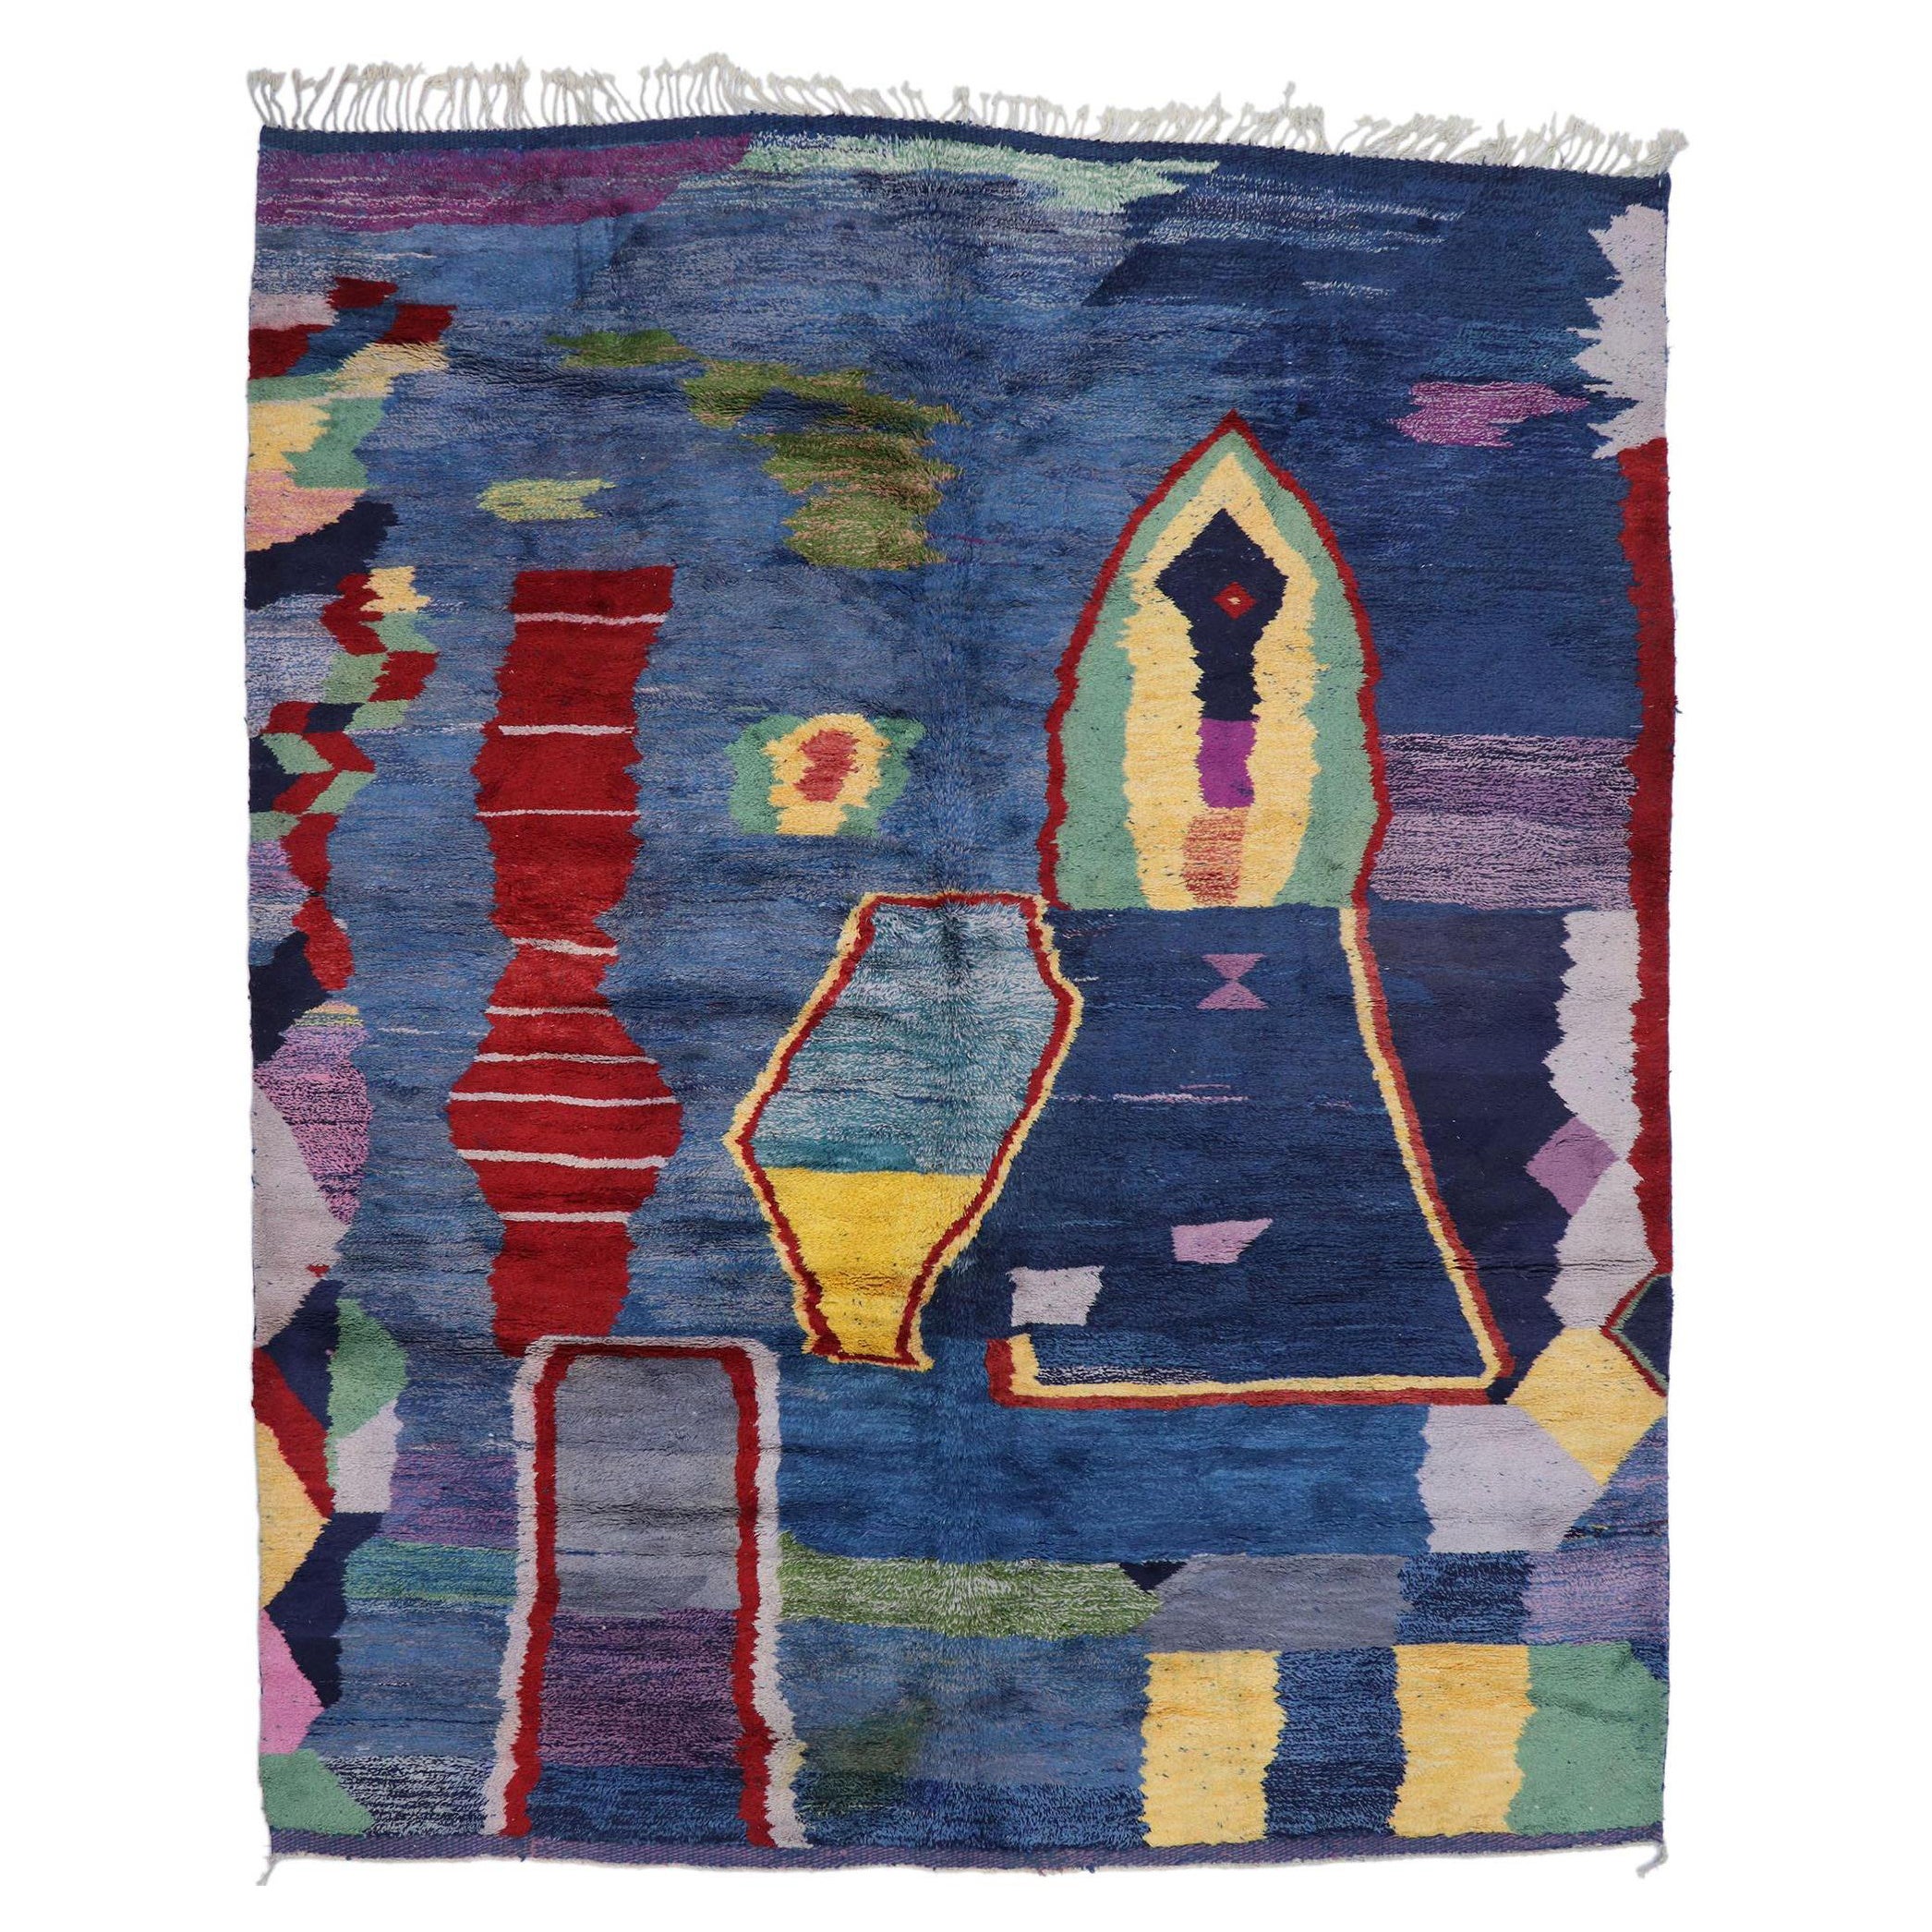 Nouveau tapis berbère marocain contemporain inspiré par Helen Frankenthaler